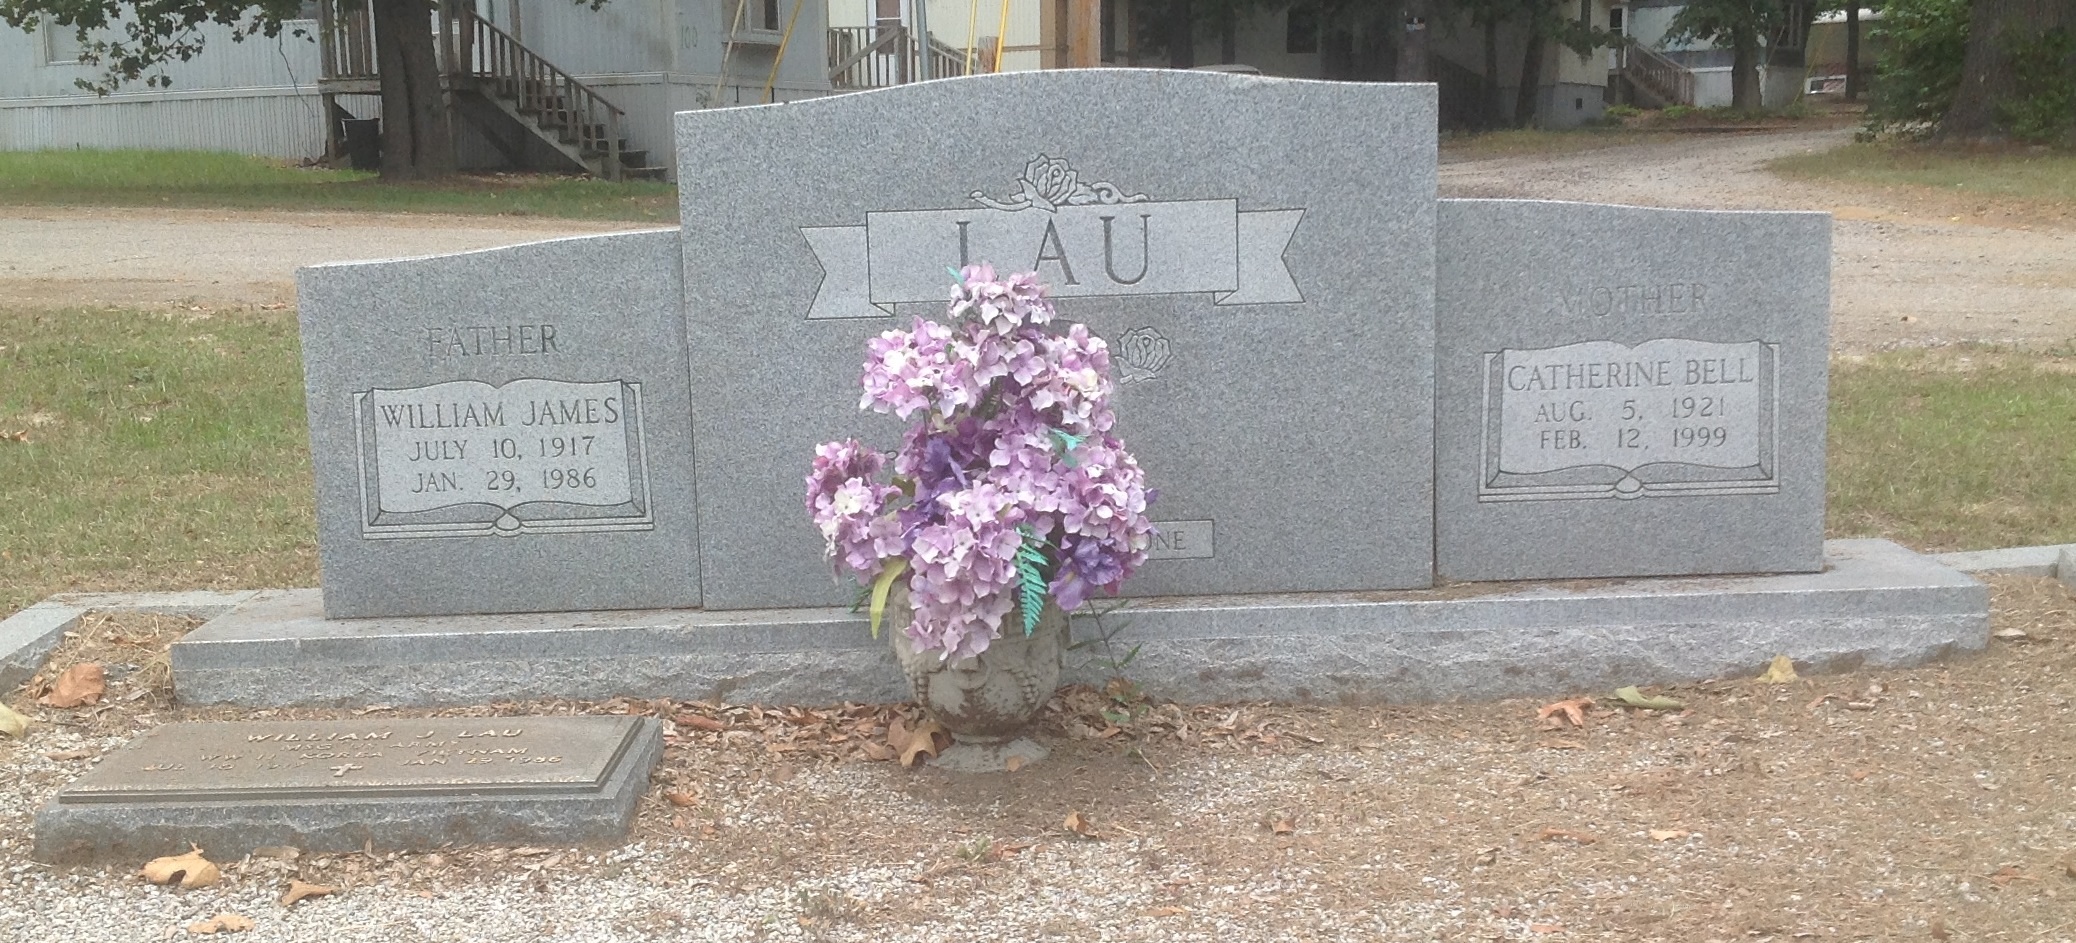 William James Lau Grave